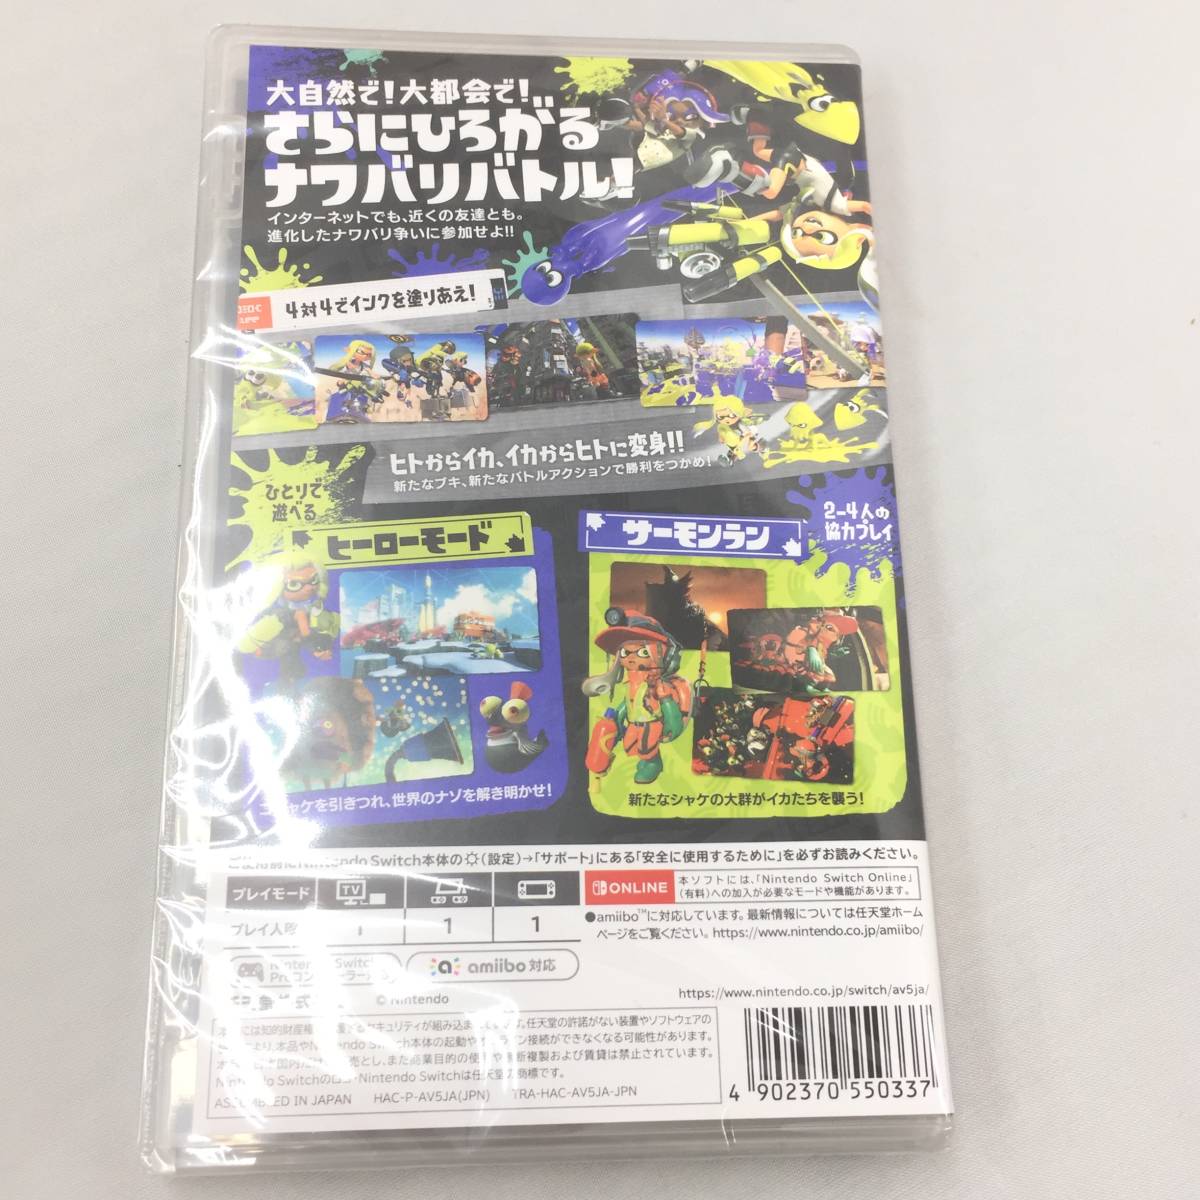 Switchソフト /スプラトゥーン3 /マリオカート8 デラックス /１円 